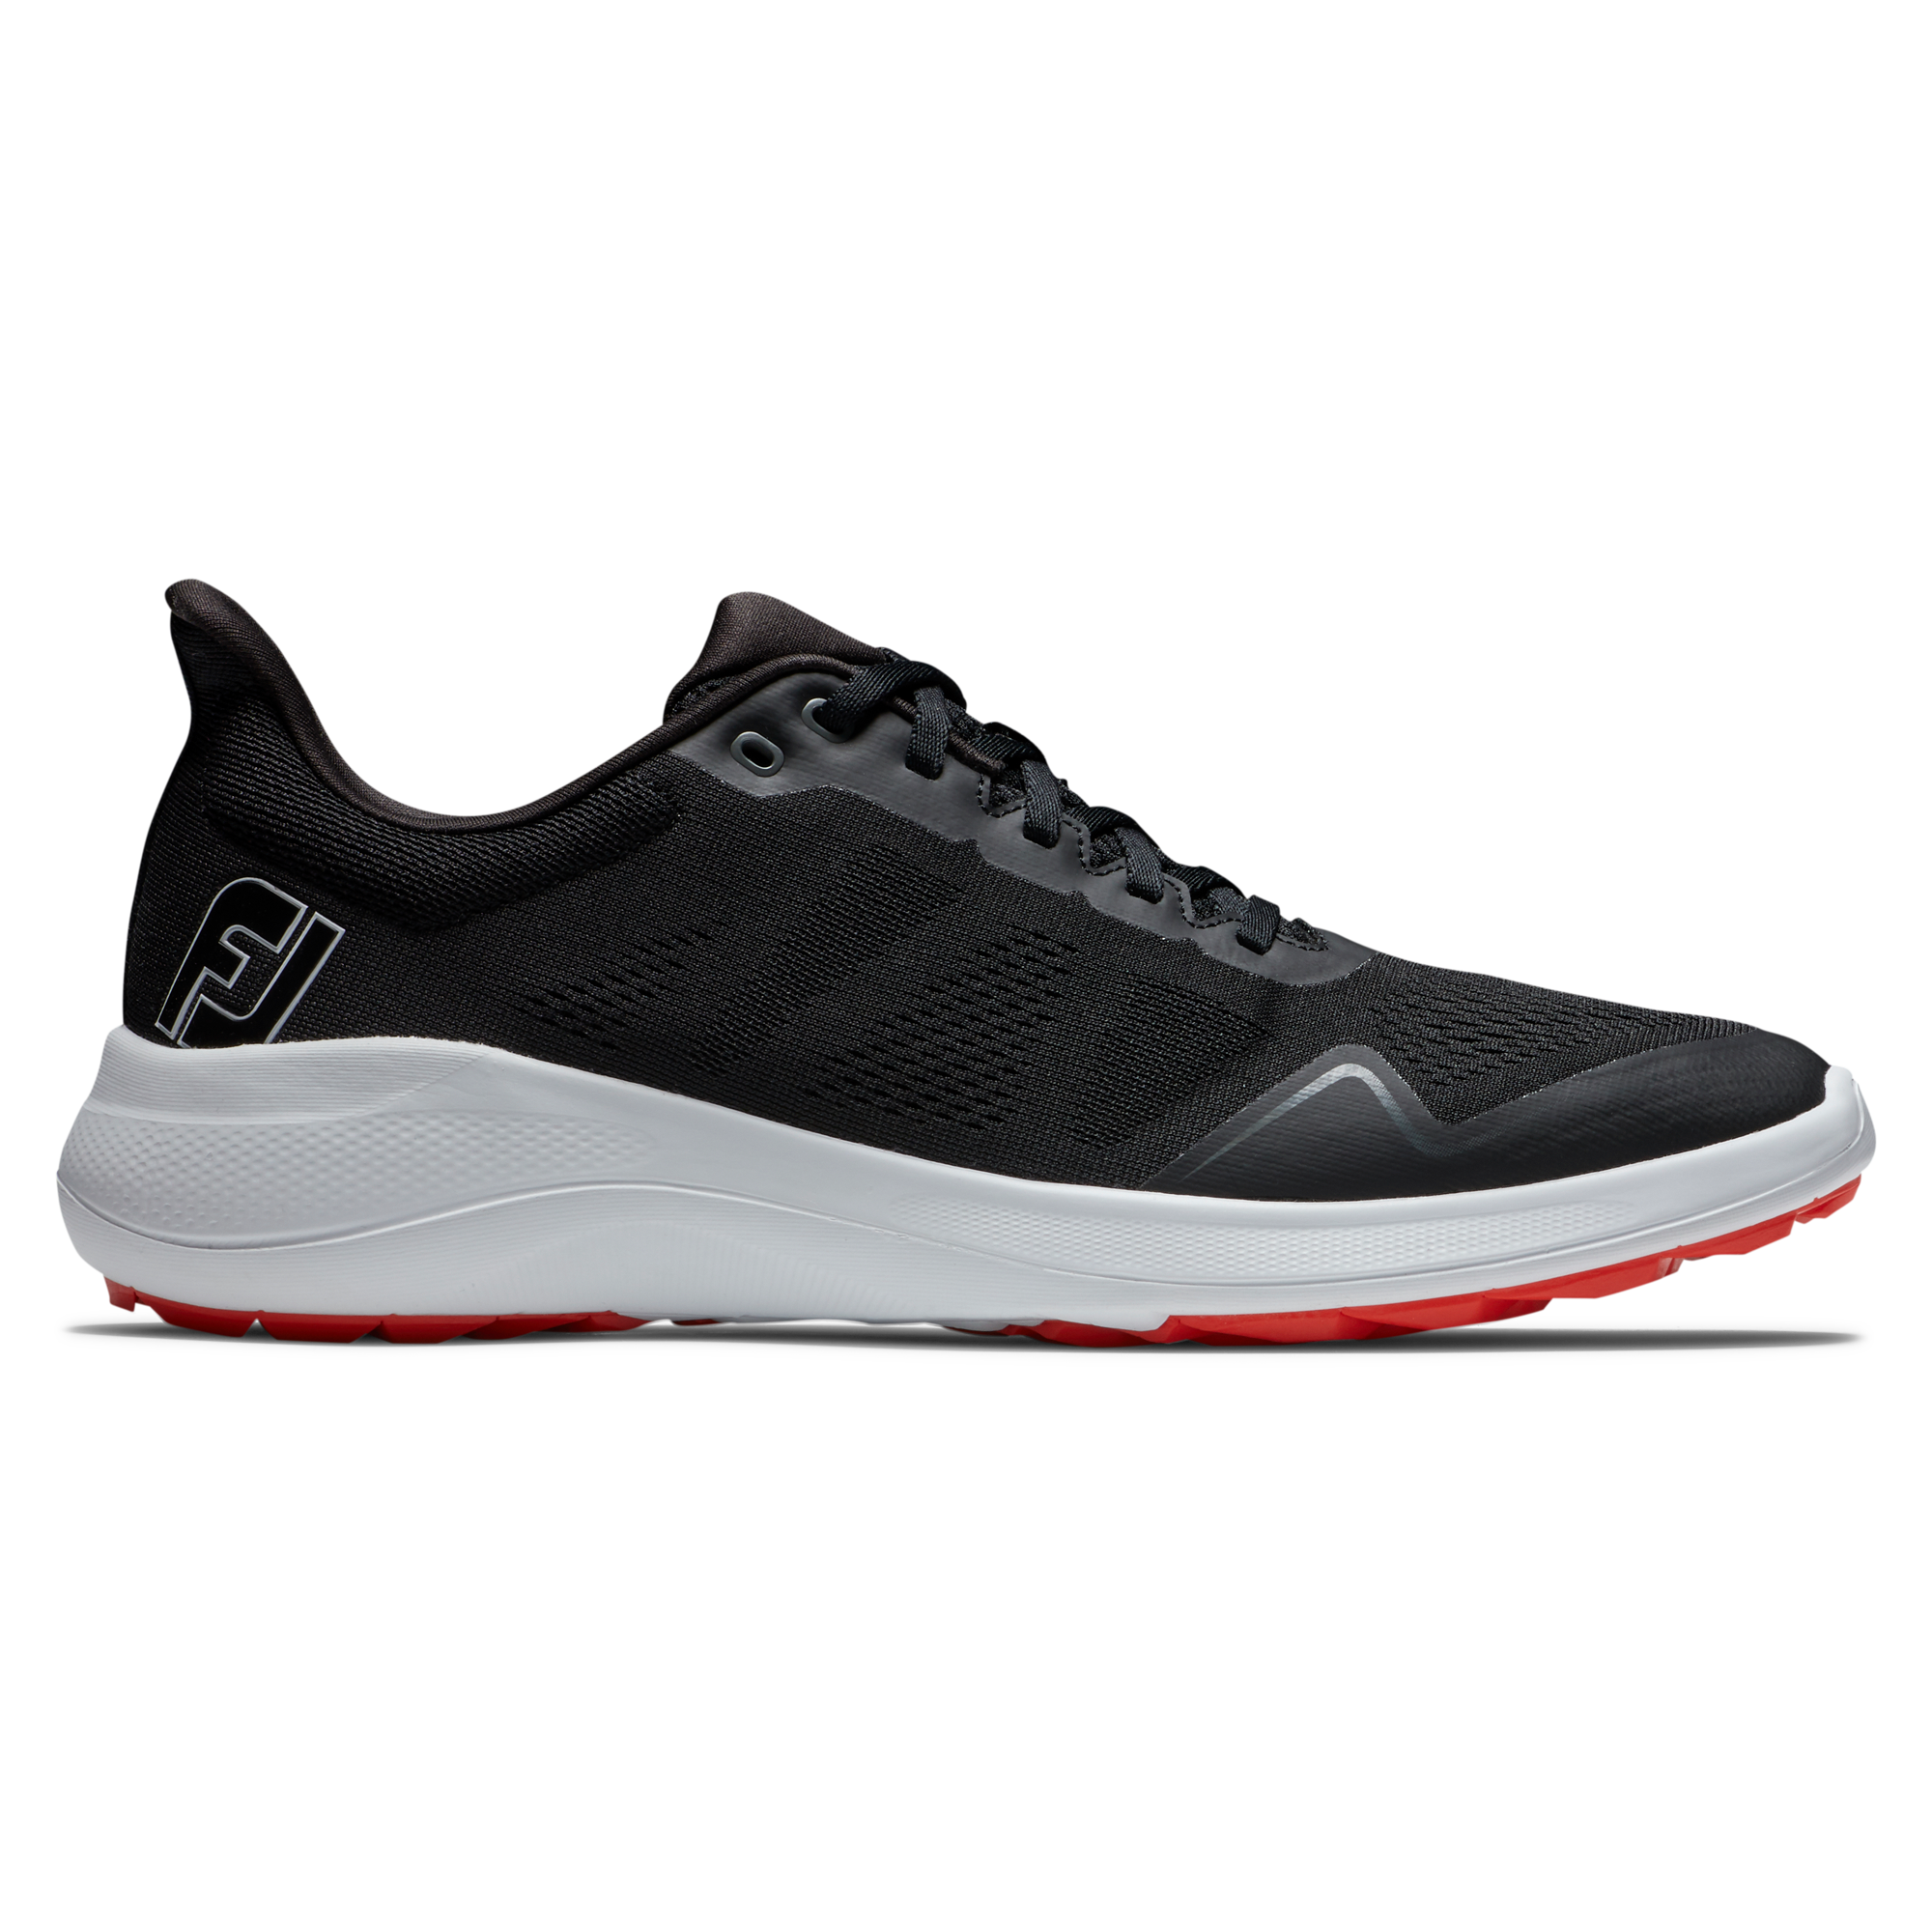 FootJoy Flex pánské golfové boty, černé, vel. 7,5 UK